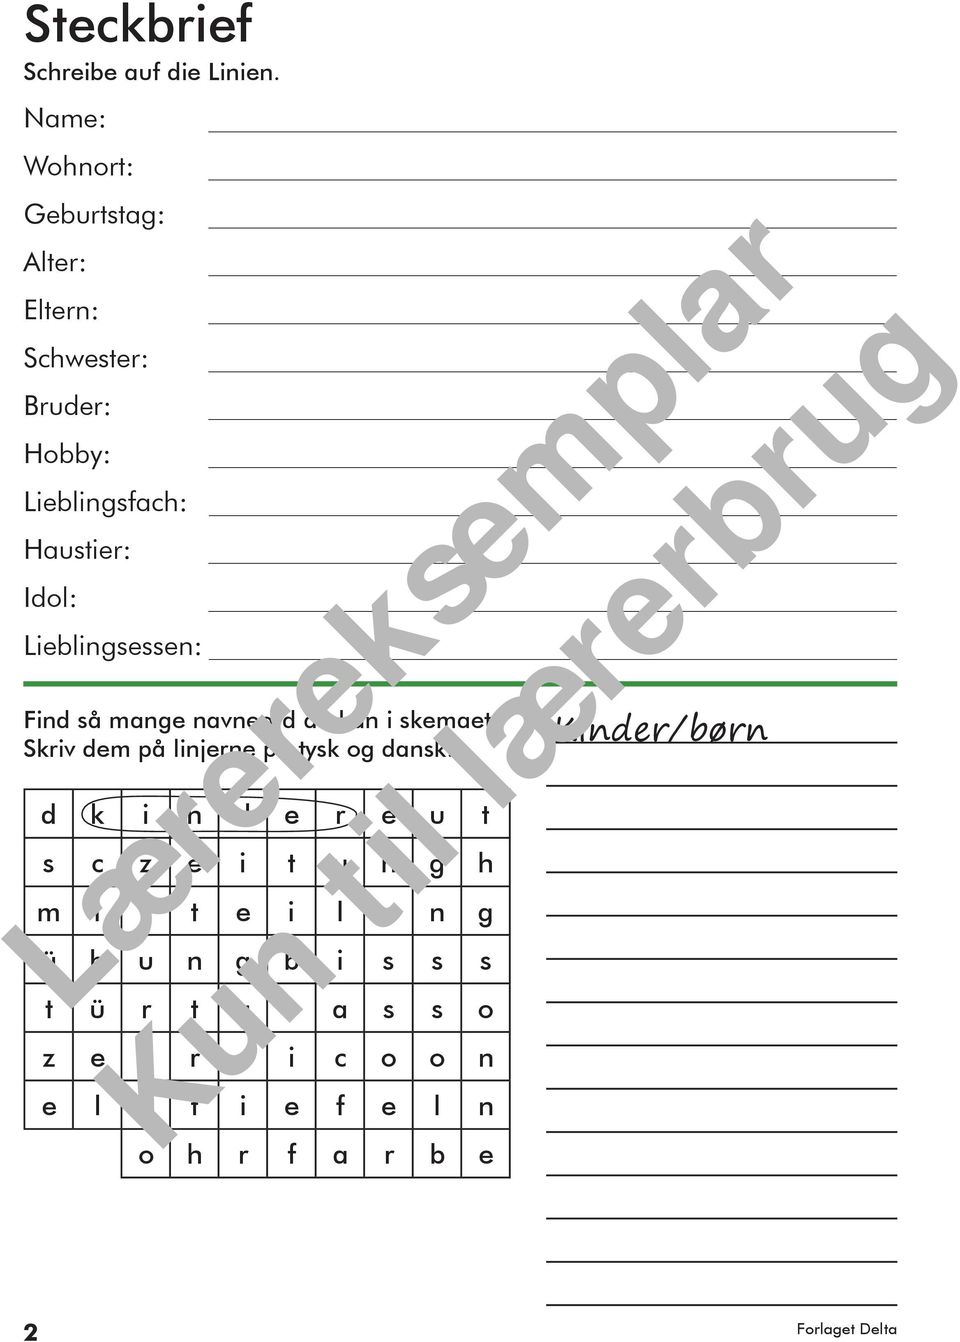 Lieblingsessen: Find så mange navneord du kan i skemaet. Skriv dem på linjerne på tysk og dansk.